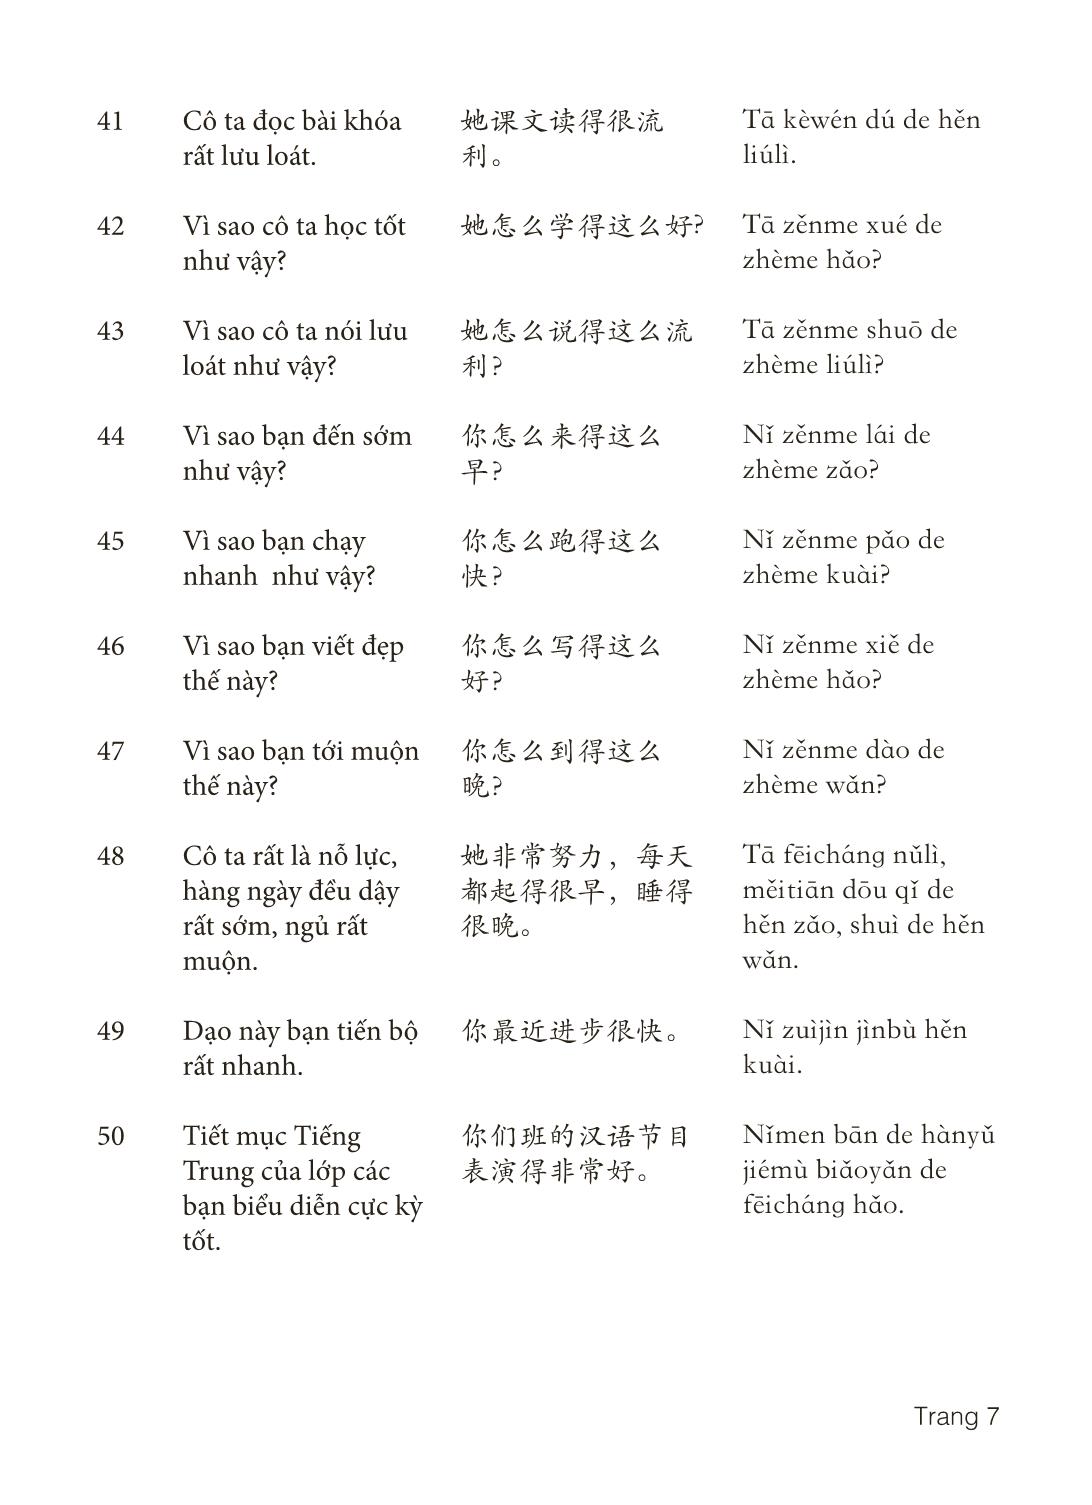 3000 Câu đàm thoại tiếng Hoa - Phần 8 trang 7